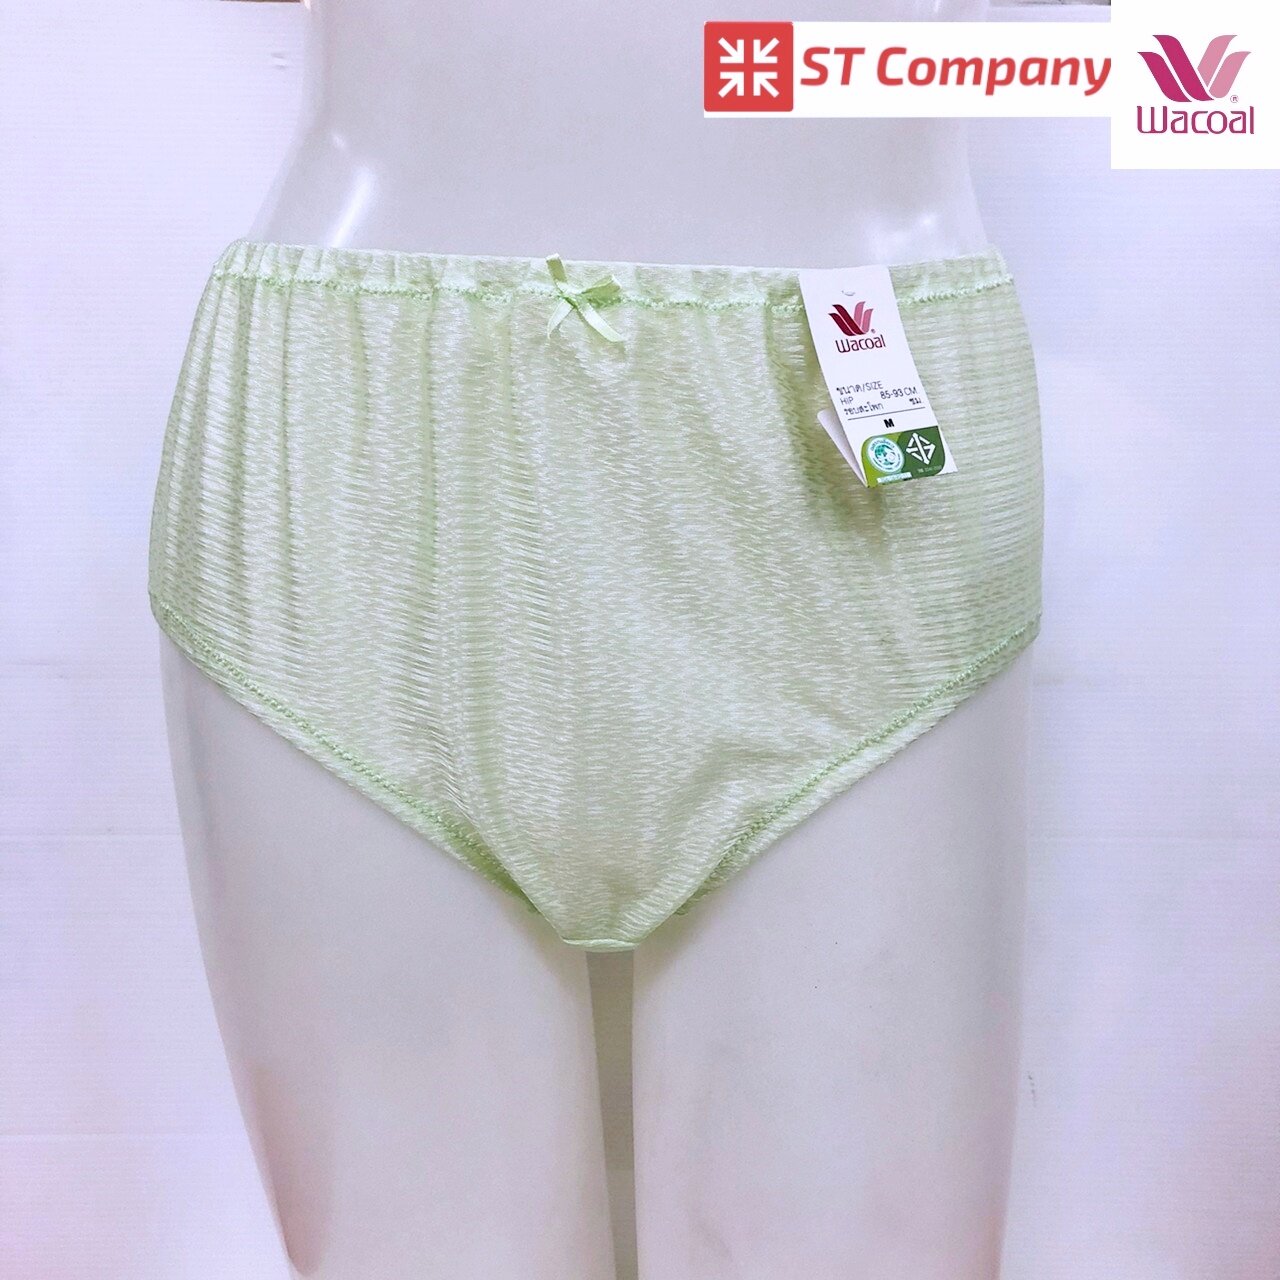 กางเกงในร้อยยาง Wacoal แบบเต็มตัว (Short) สีเขียวอ่อน (ME) รุ่น WU4948 1 ตัว เนื้อผ้าเงางาม ผิวสัมผัสเนียนนุ่ม ใส่สบาย ซักง่าย แห้งเร็ว วาโก้ กางเกง